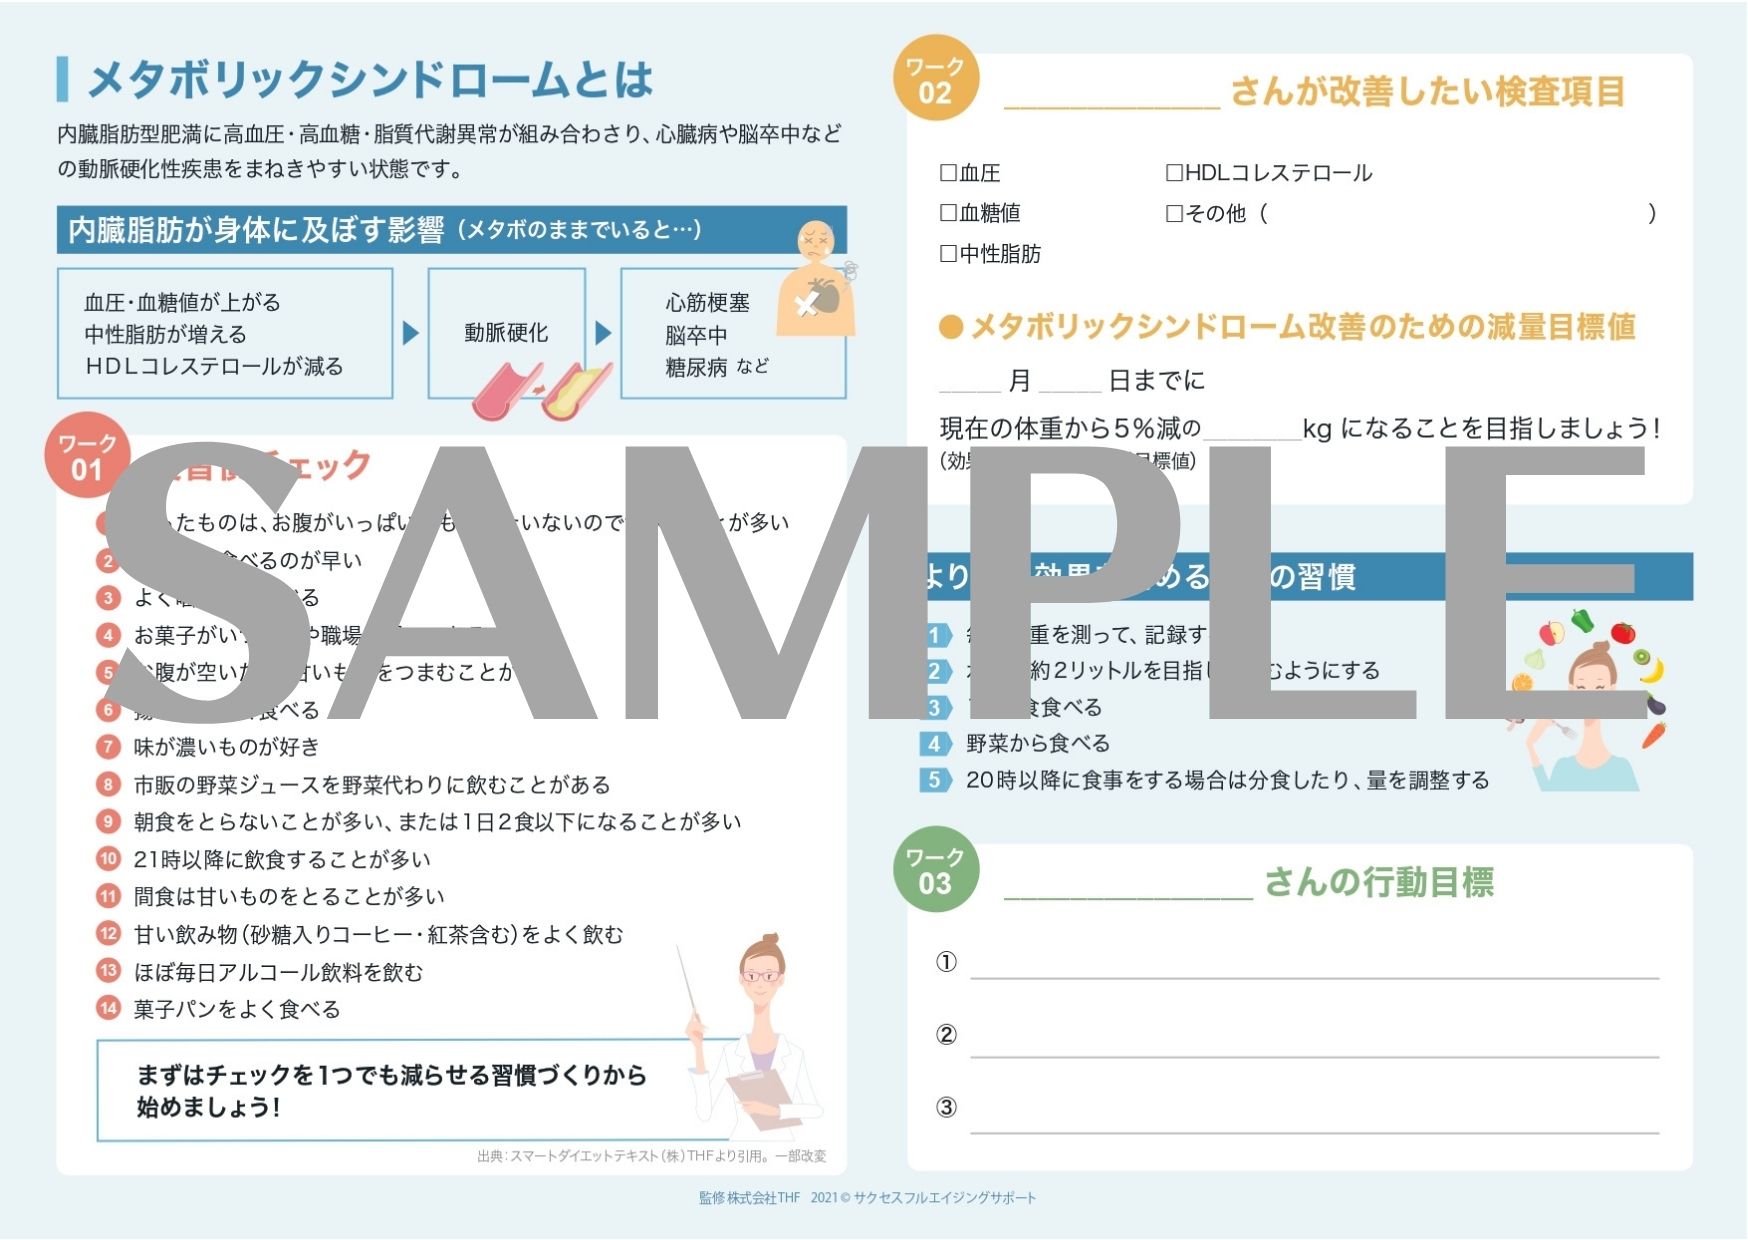 保健指導リーフレット表【SAMPLE】